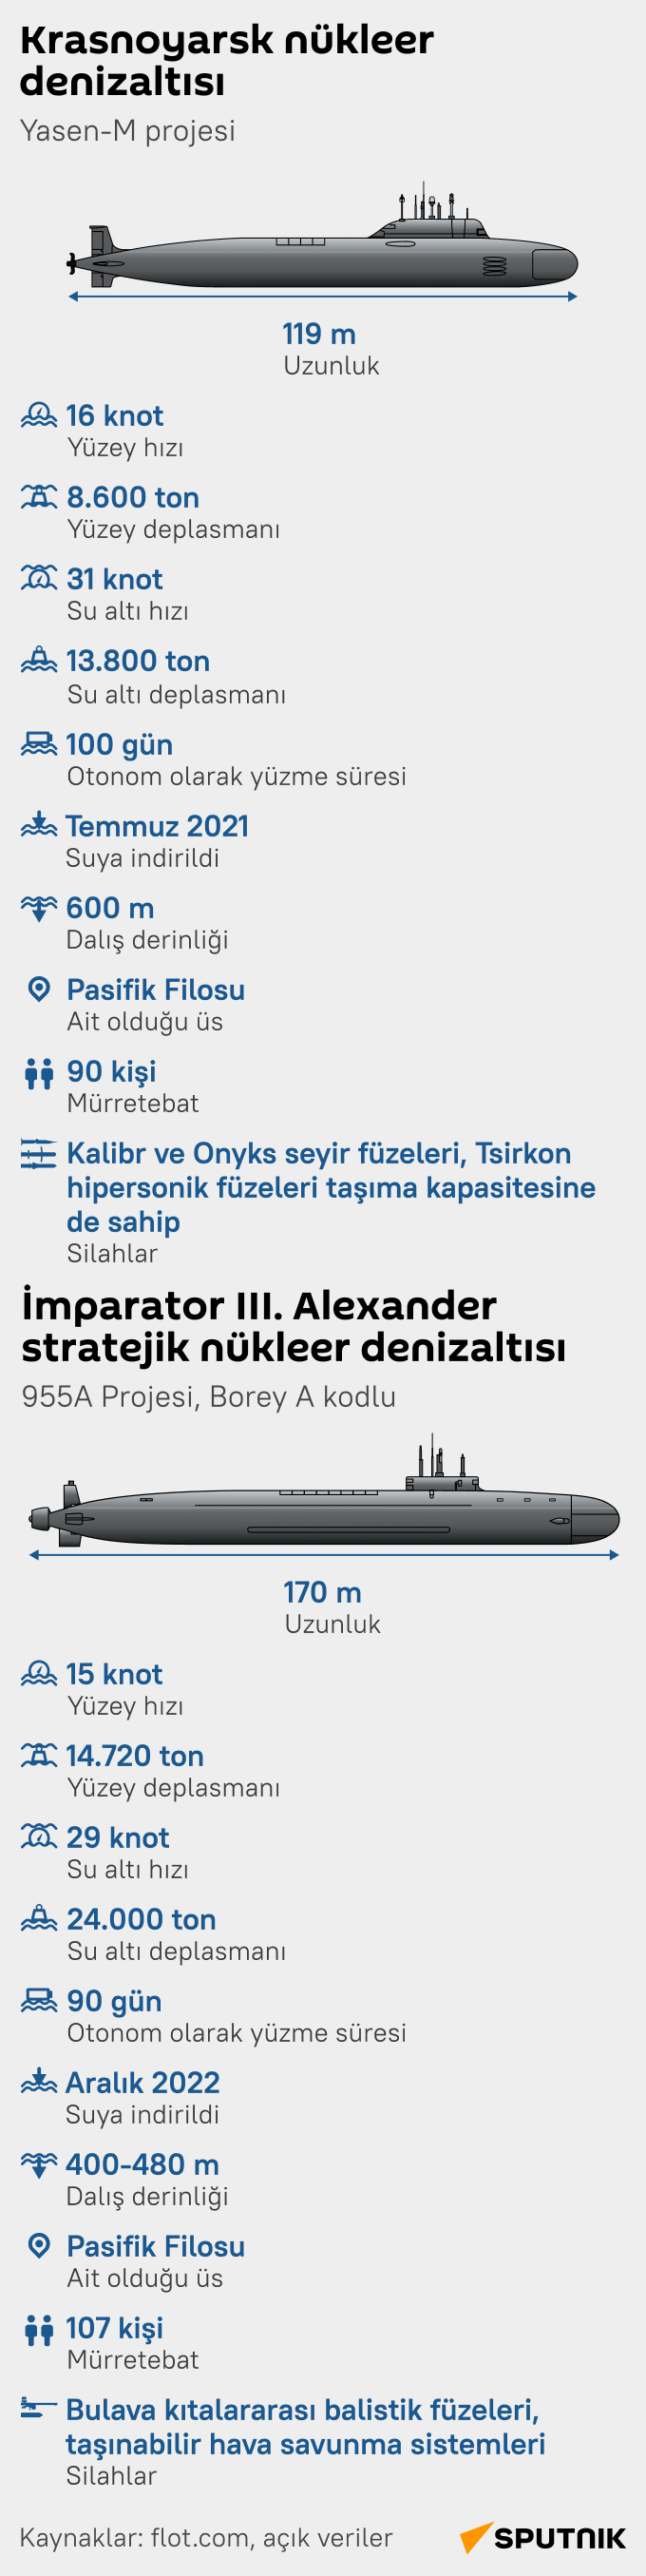 Rus Donanmasına katılan iki nükleer denizaltı: Krasnoyarsk ve İmparator III. Alexander   - Sputnik Türkiye